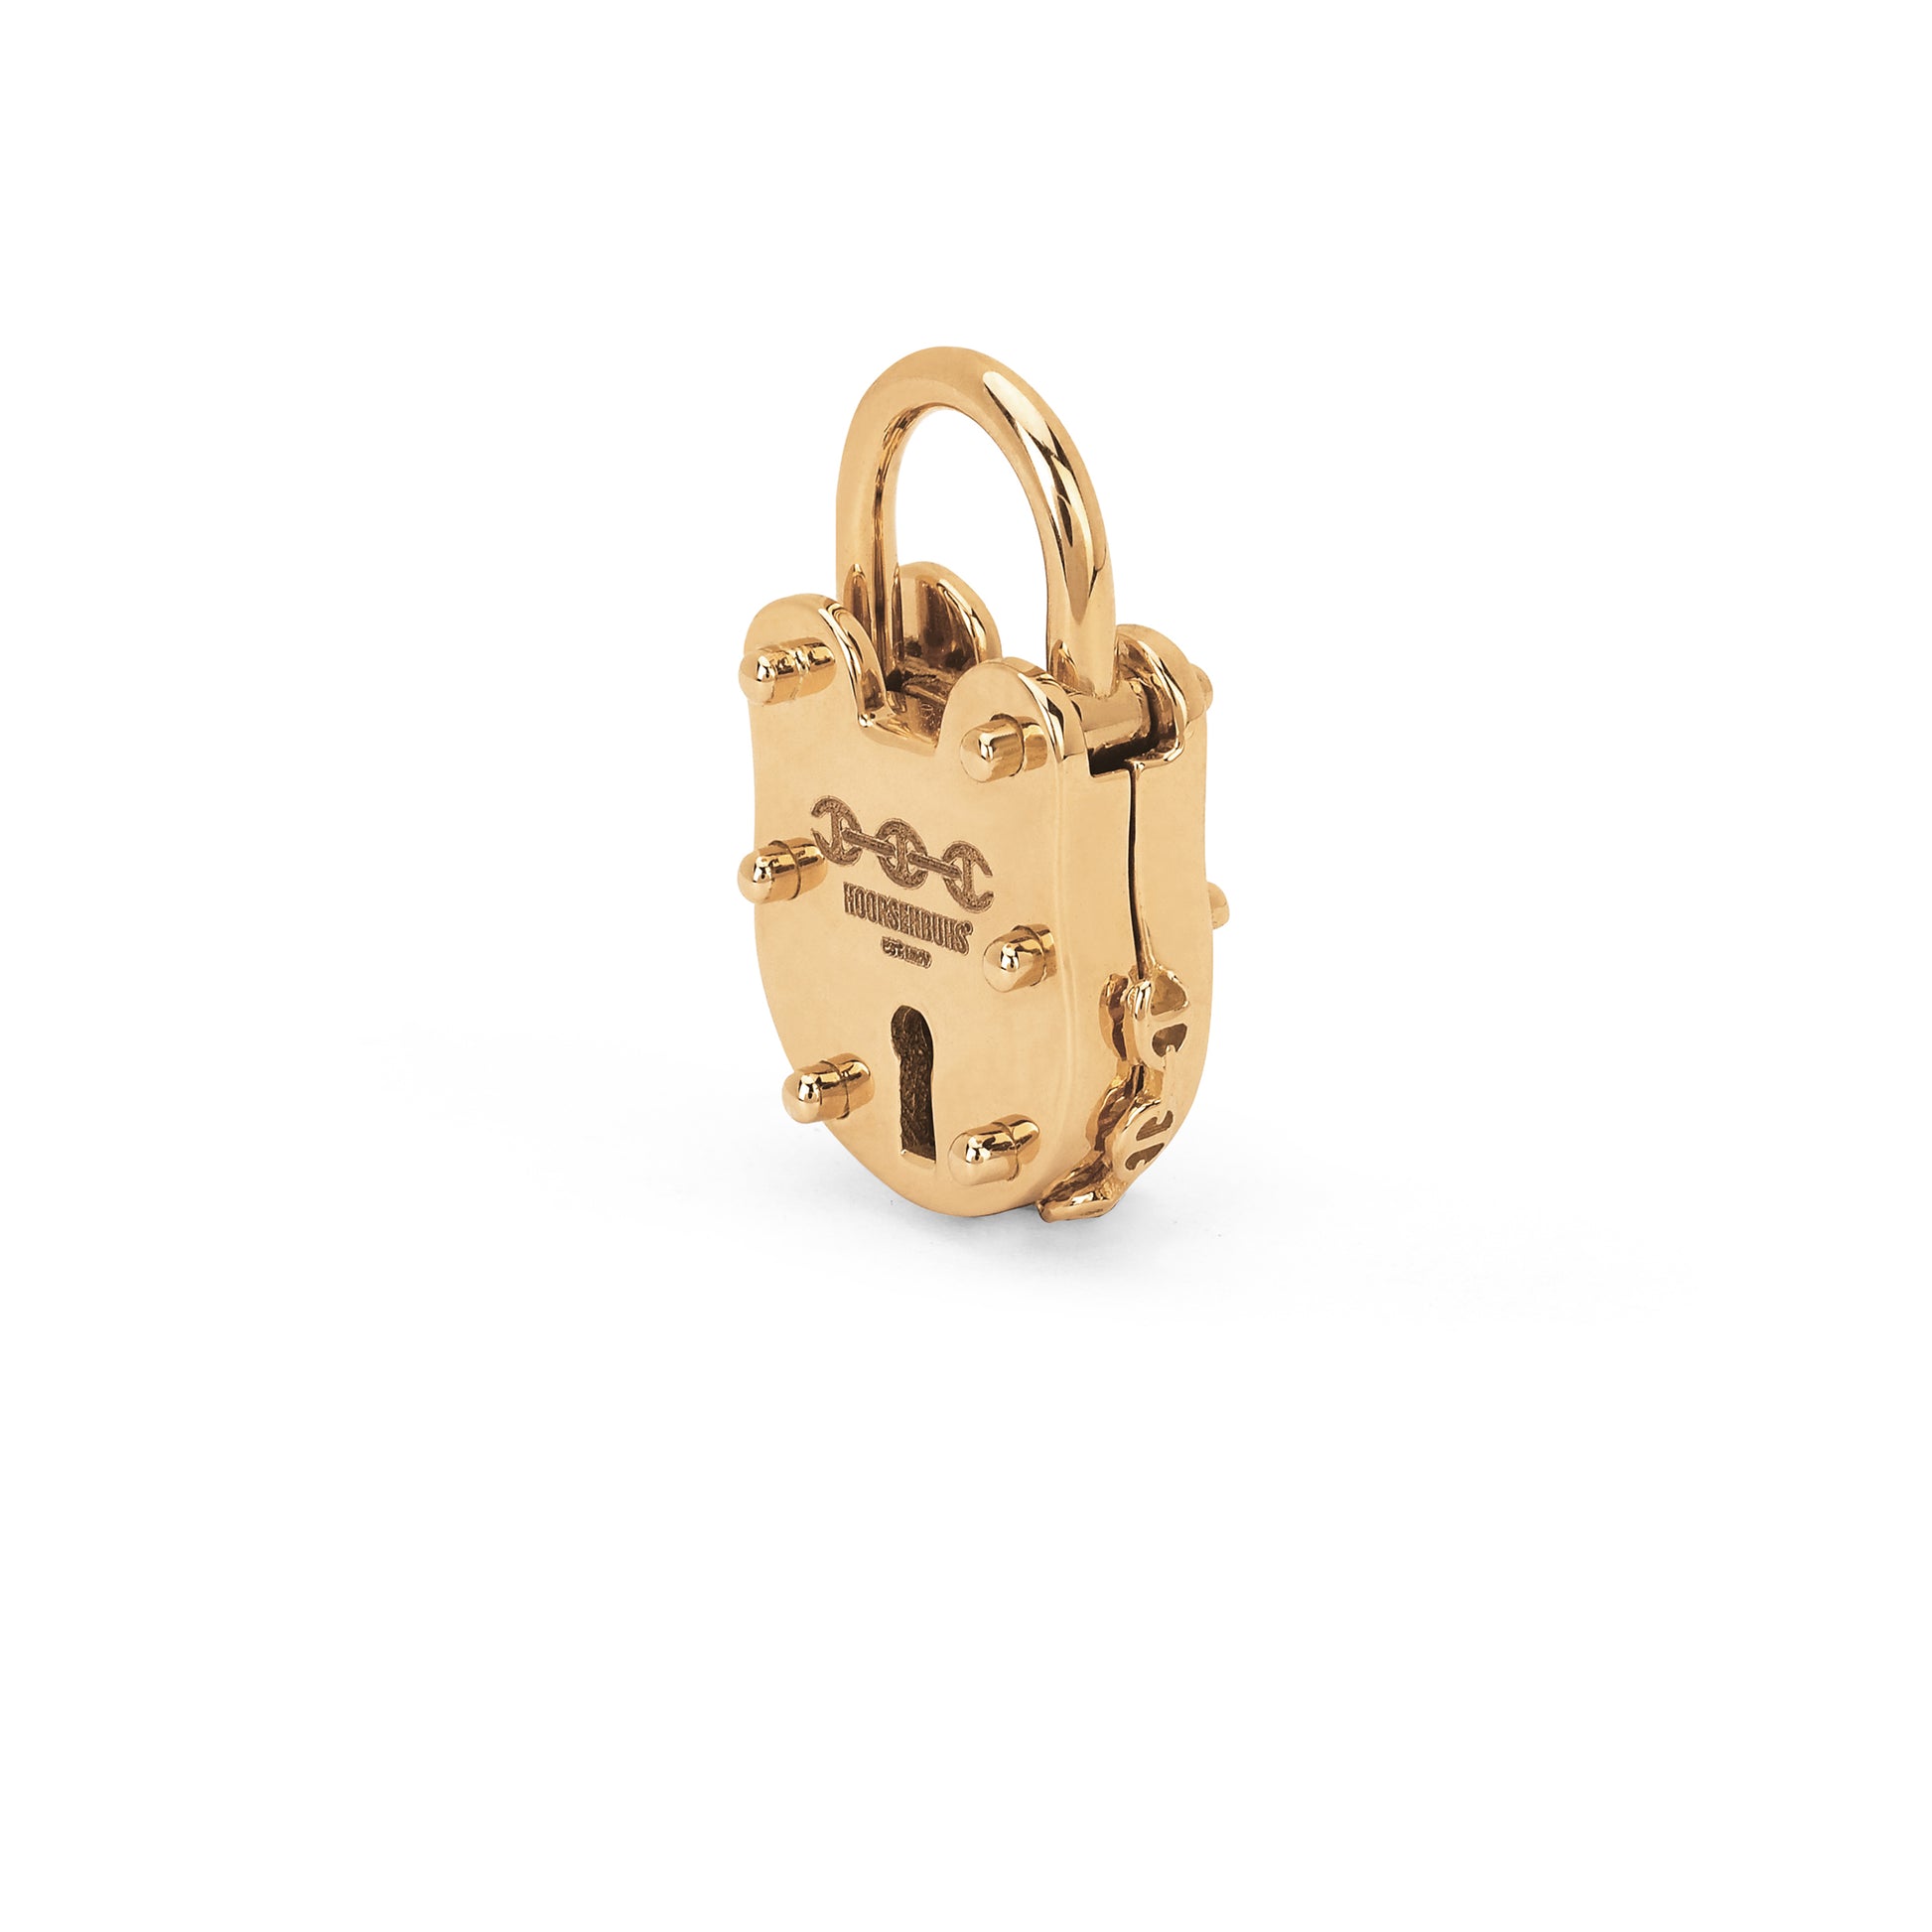 Louis Vuitton Lock & Key Pendant Necklace .925 Sterling